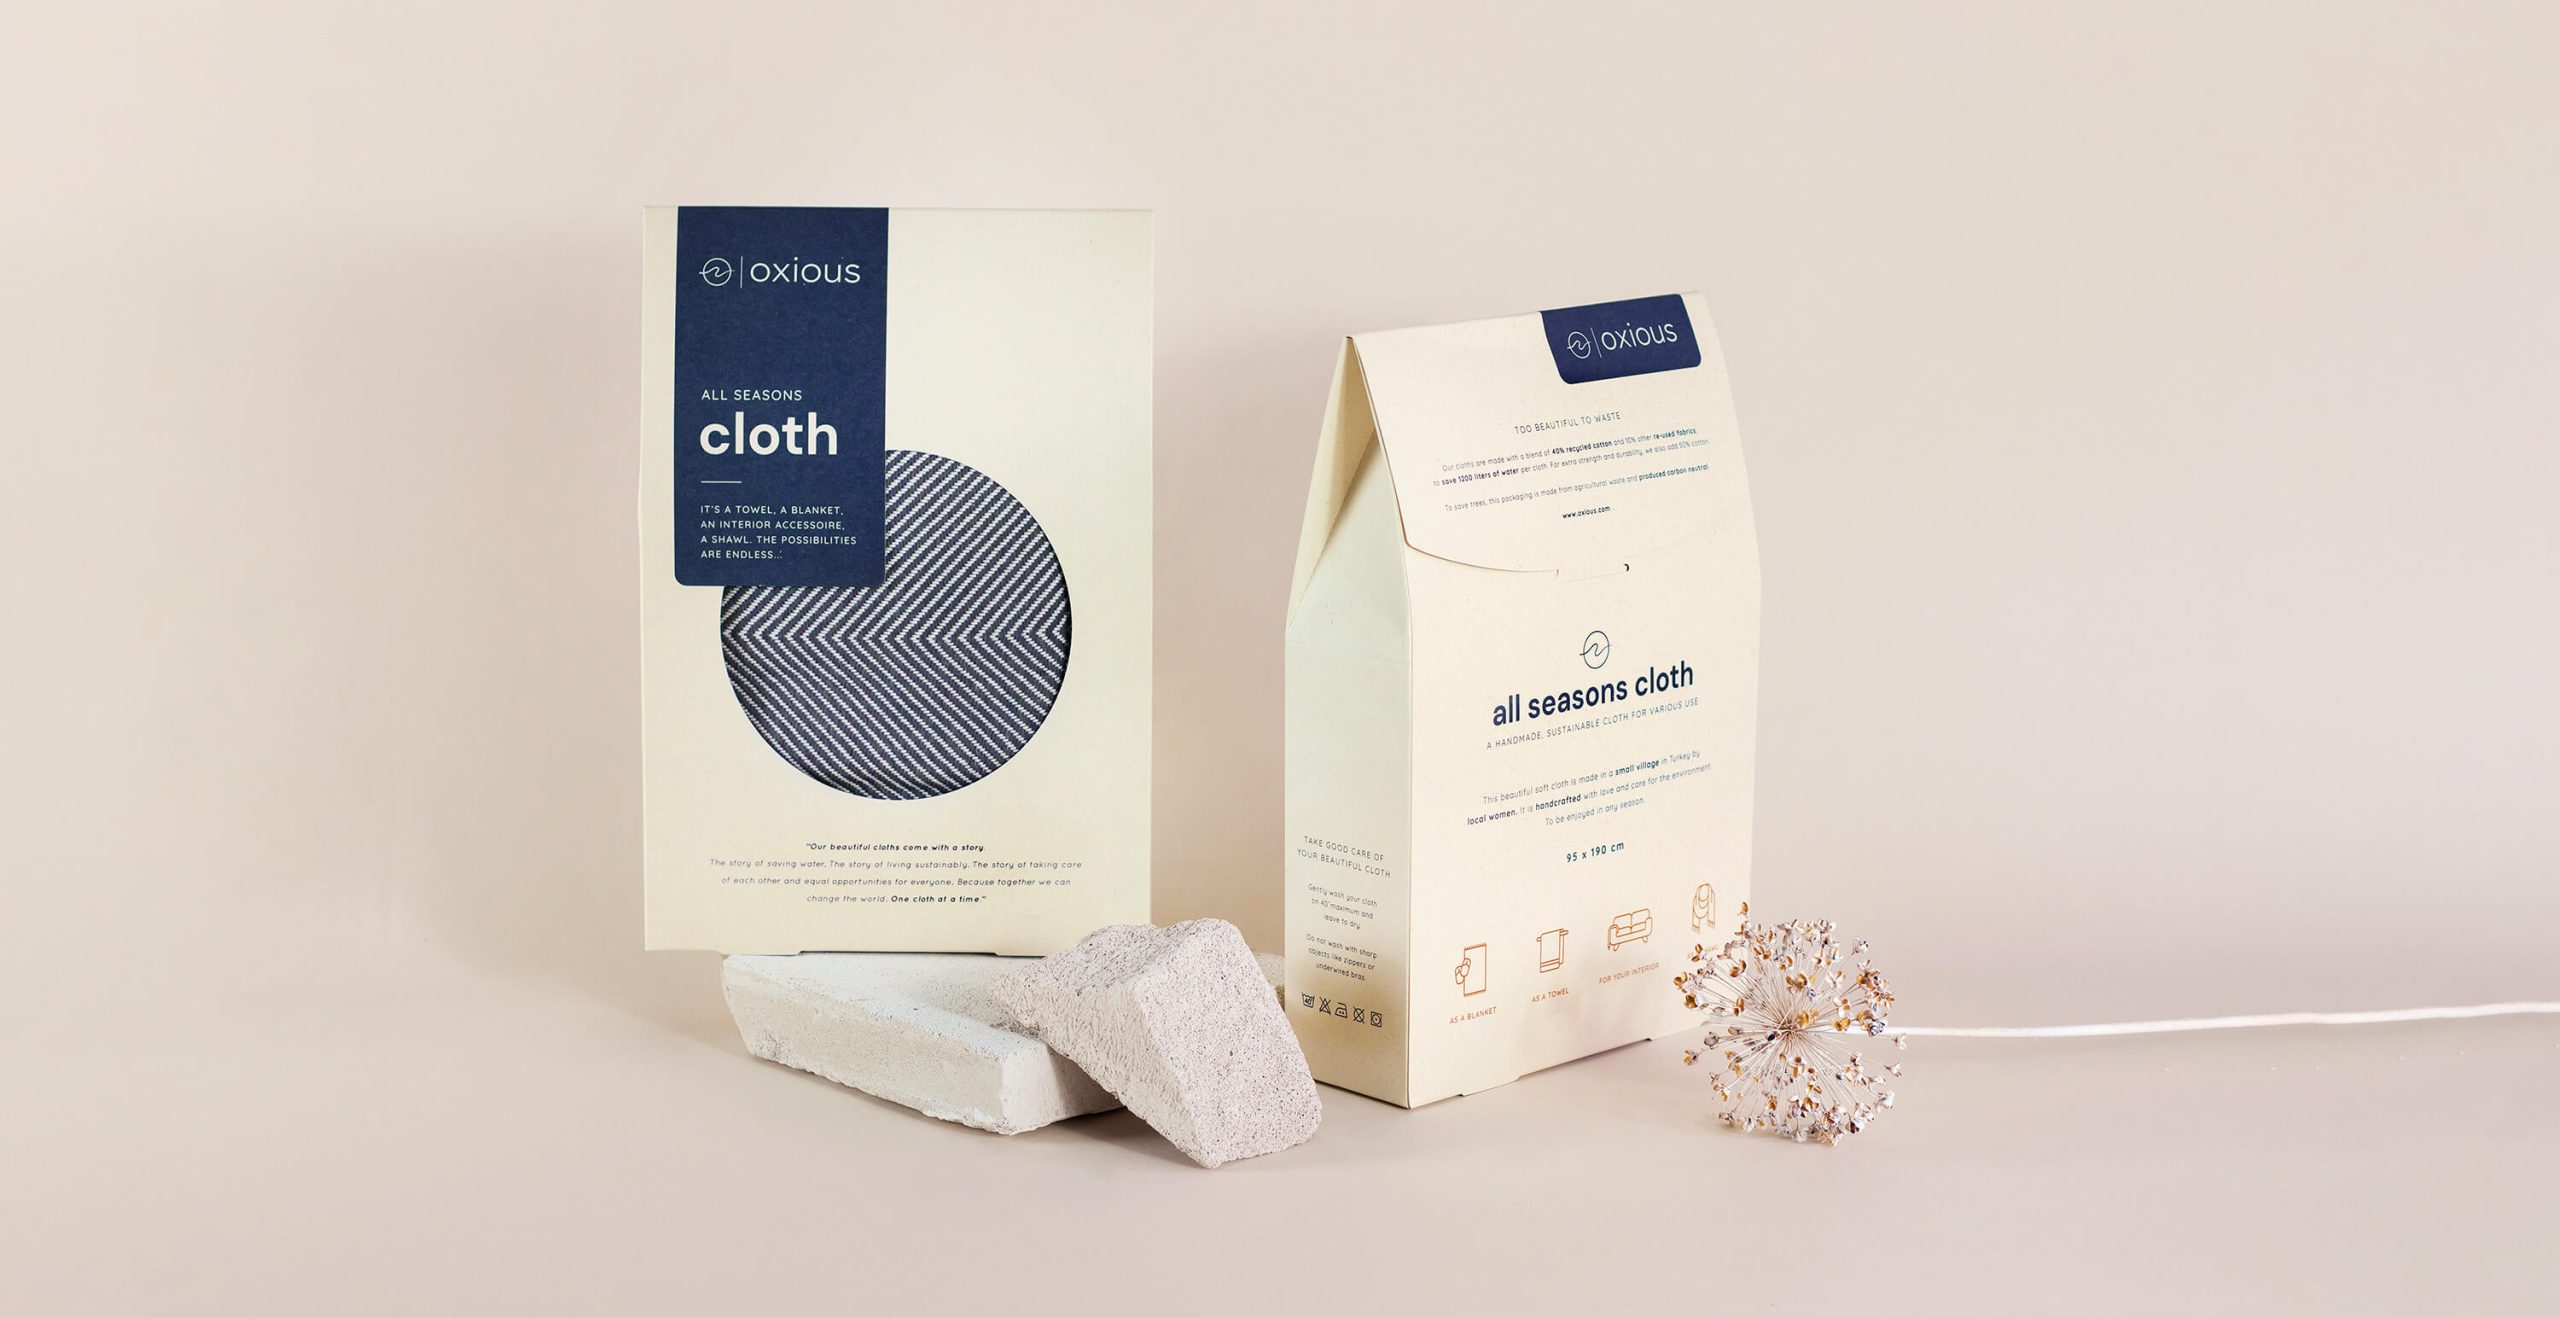 Packaging Rebels mocht een duurzame verpakking ontwerpen voor de hammamdoeken van Oxious